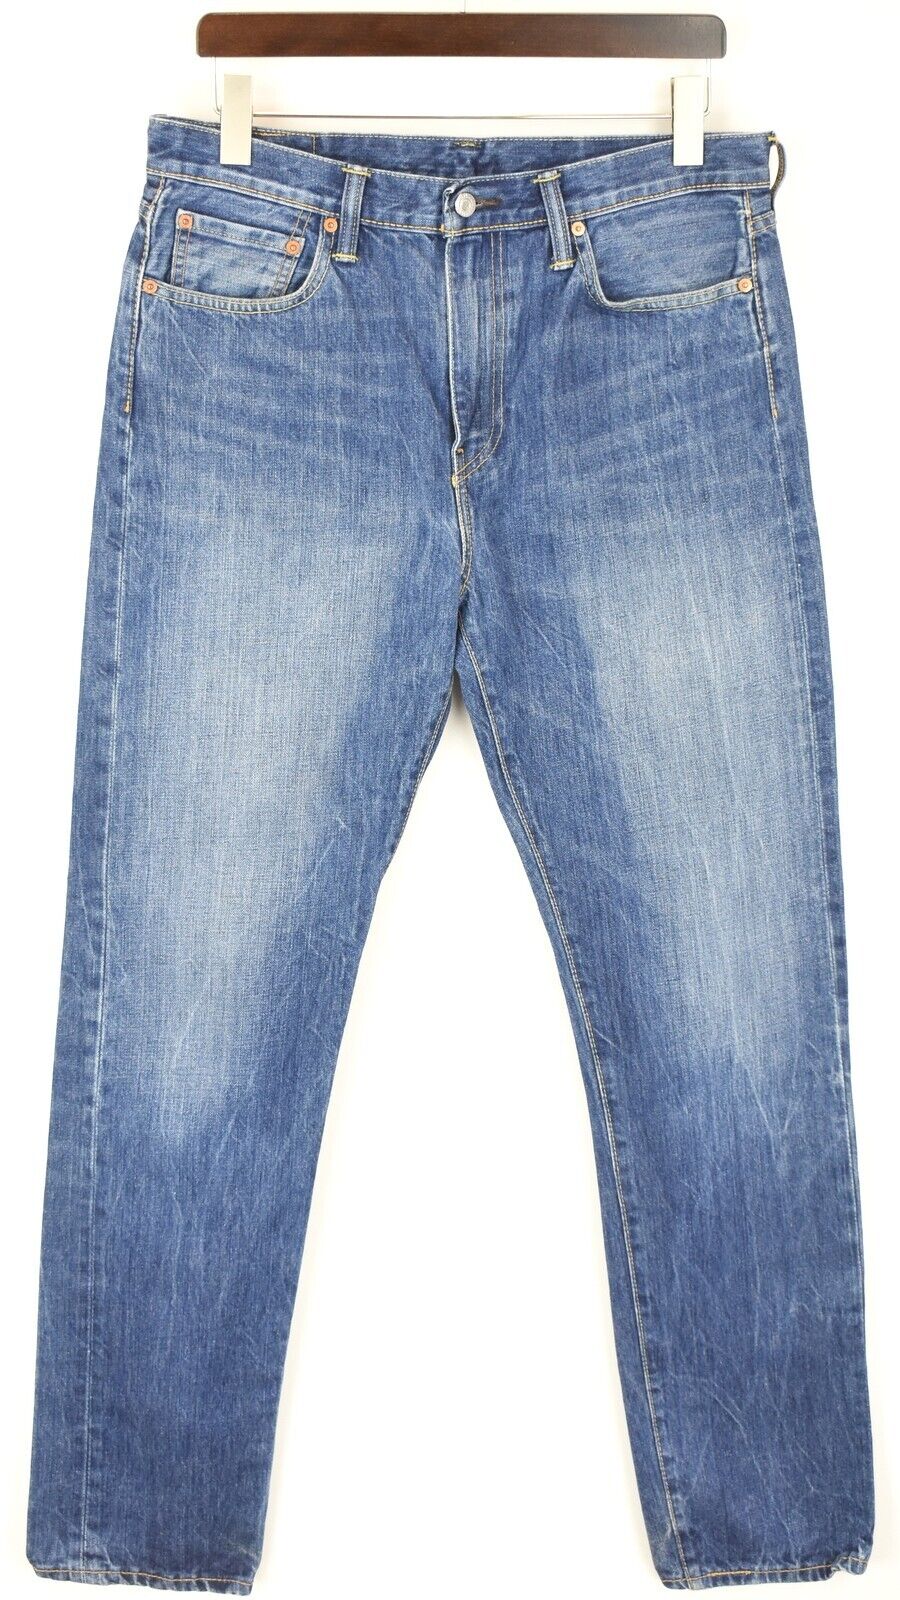 LEVI's 522 Jeans Men's W33/L34 Slim Fit Zip Fly Faded Logo Blue | eBay